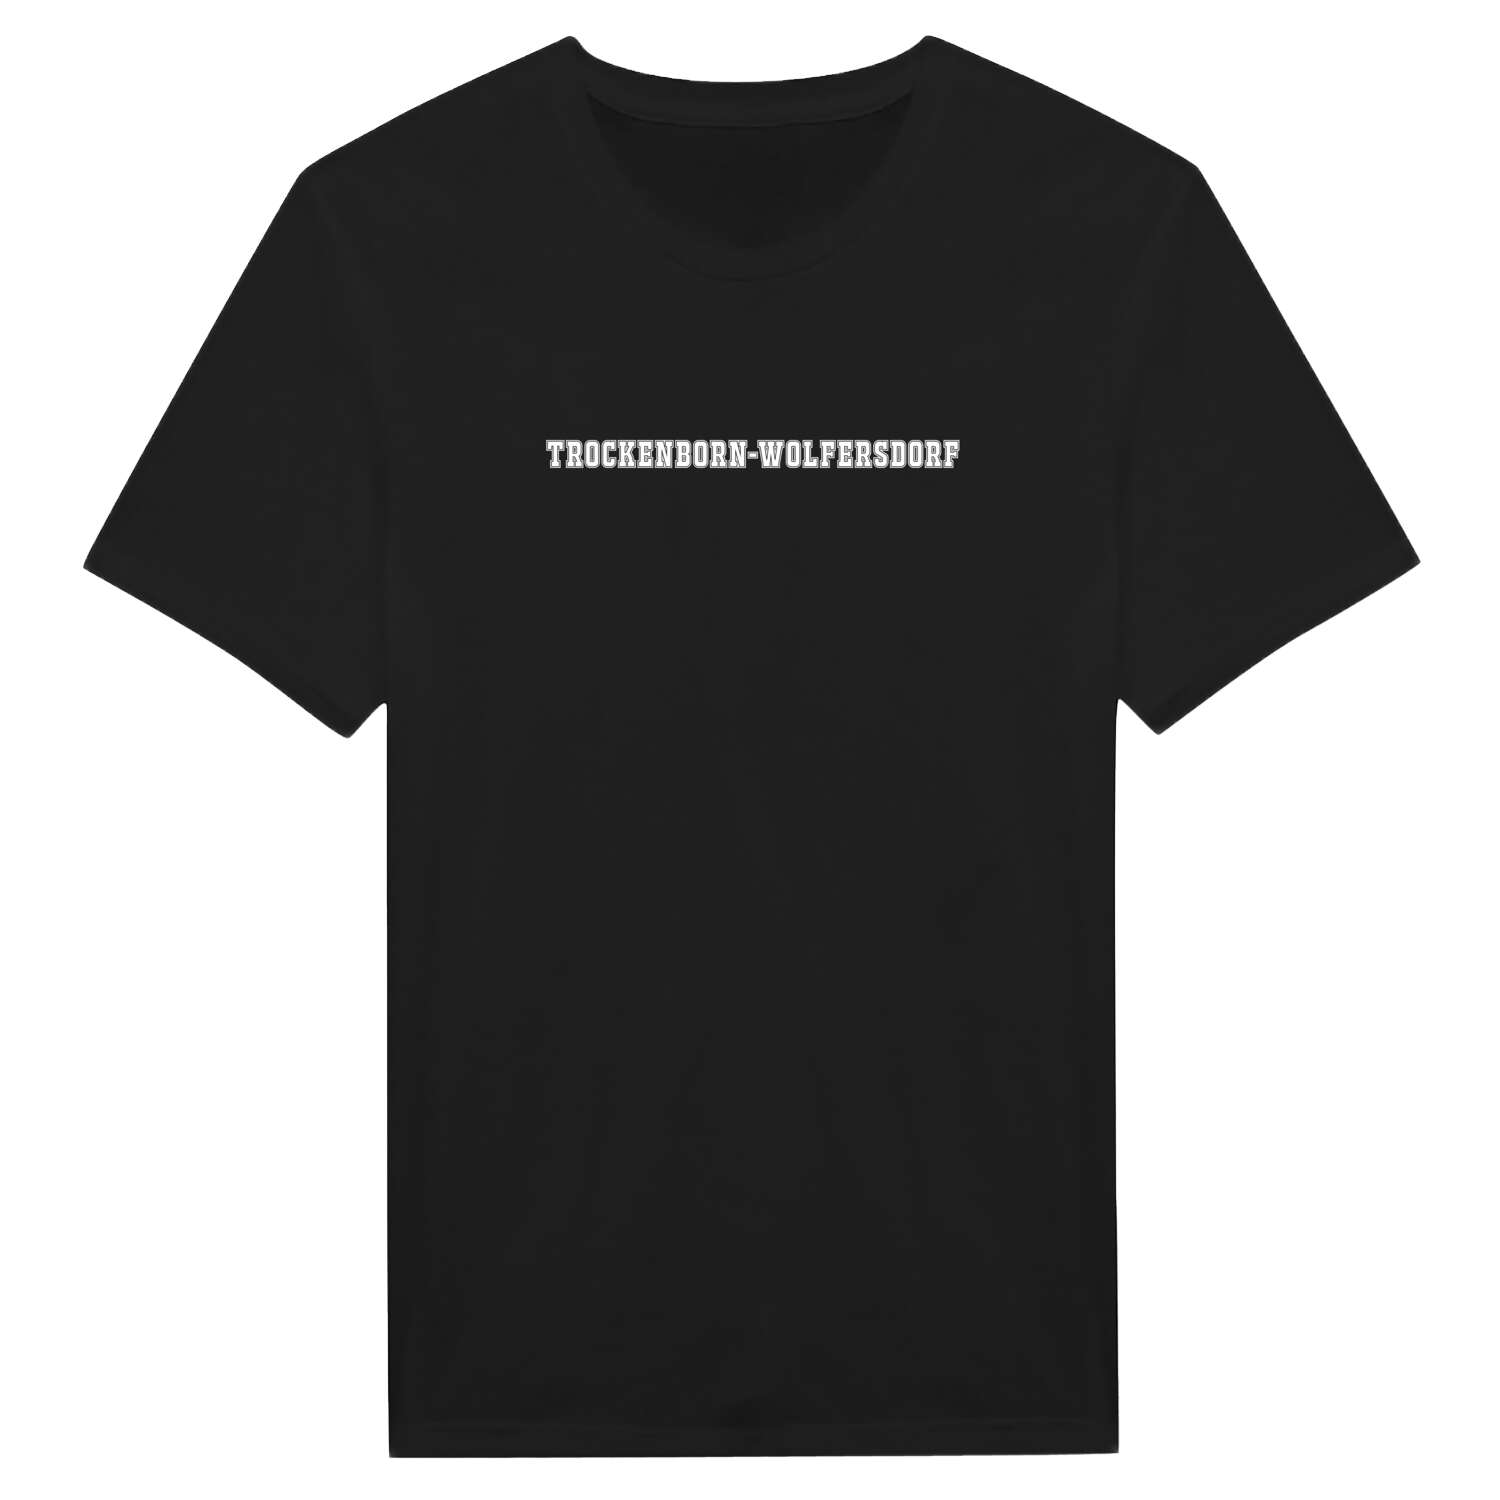 Trockenborn-Wolfersdorf T-Shirt »Classic«